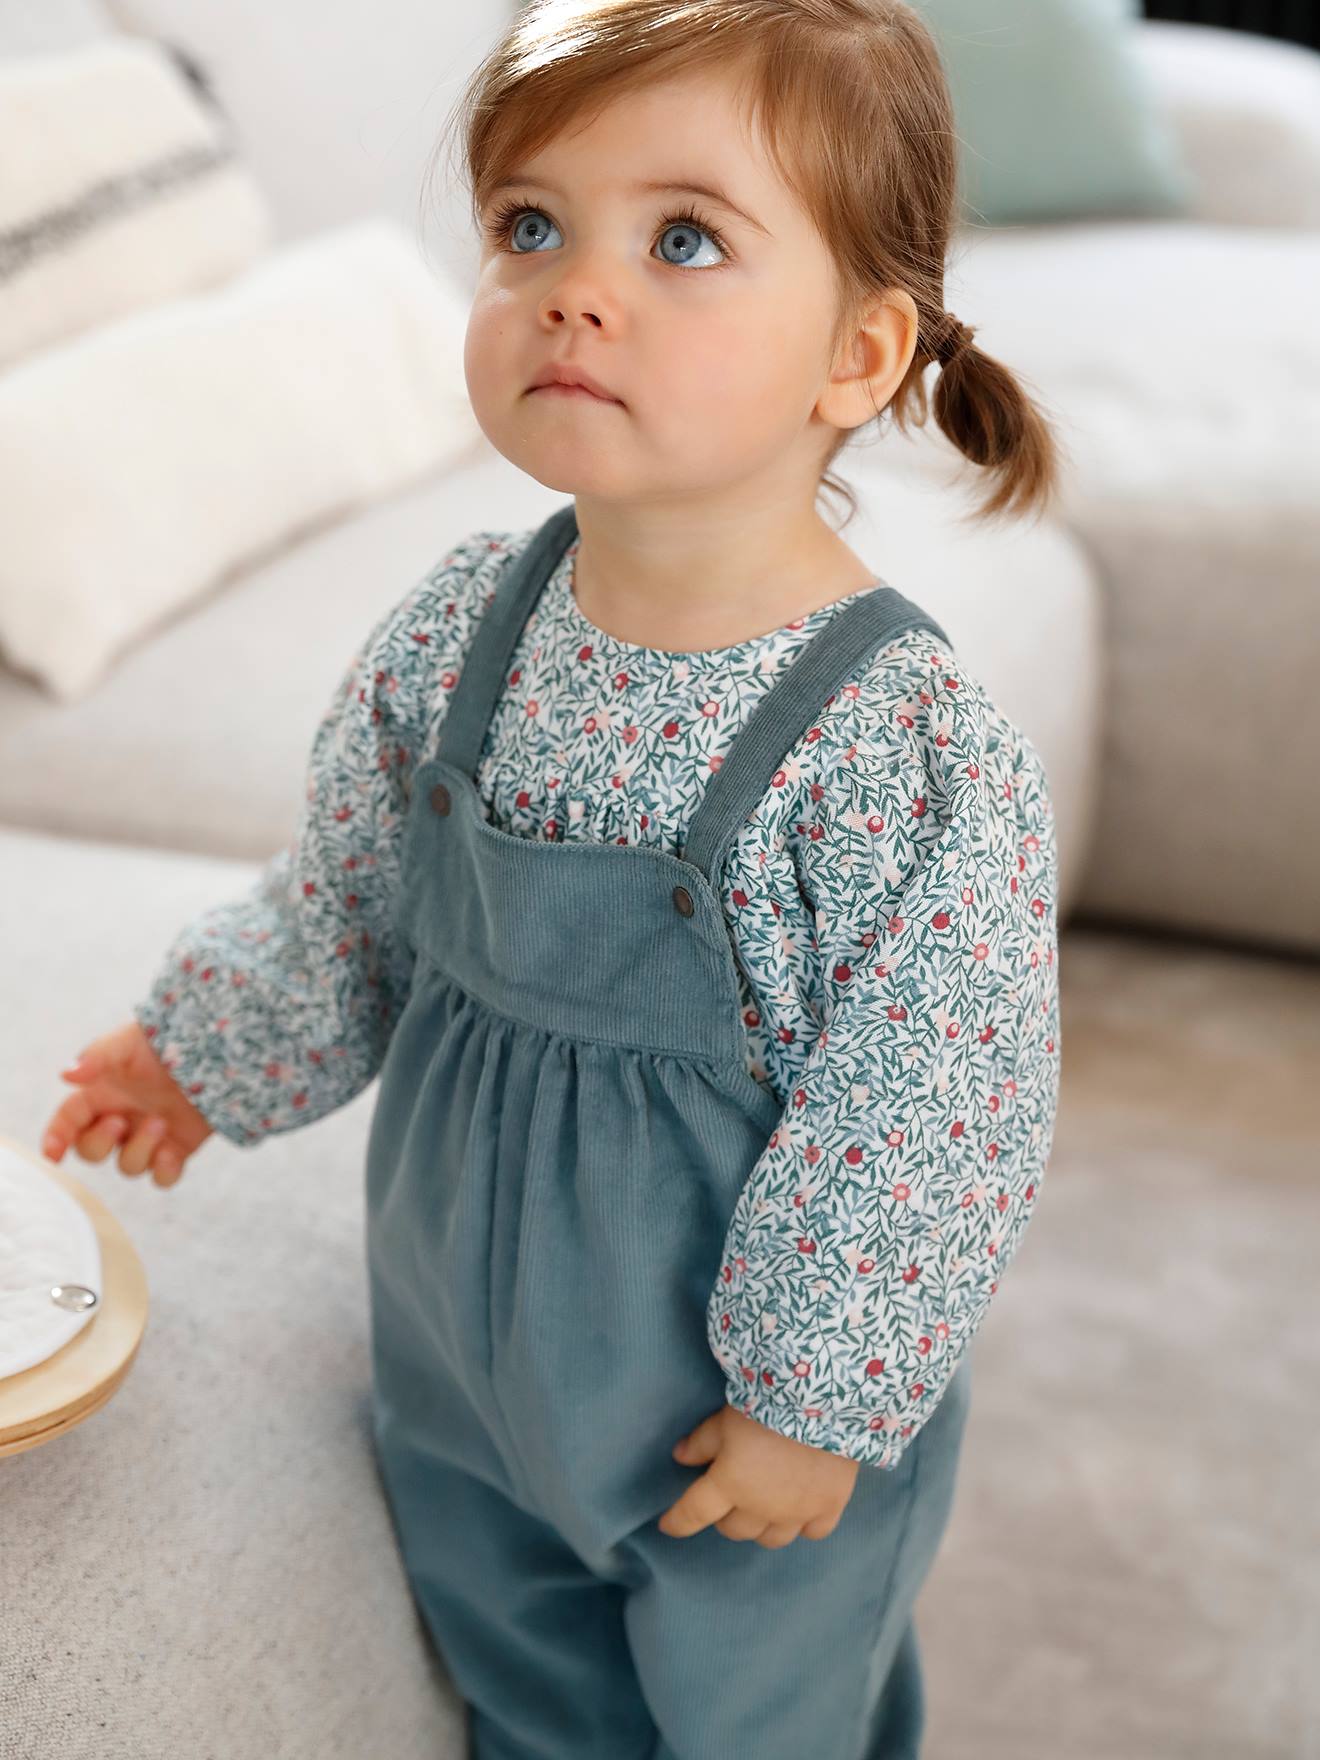 Adora Adorable petit combishort salopette courte Kaki 1-3 mois en toile coton comme 9 